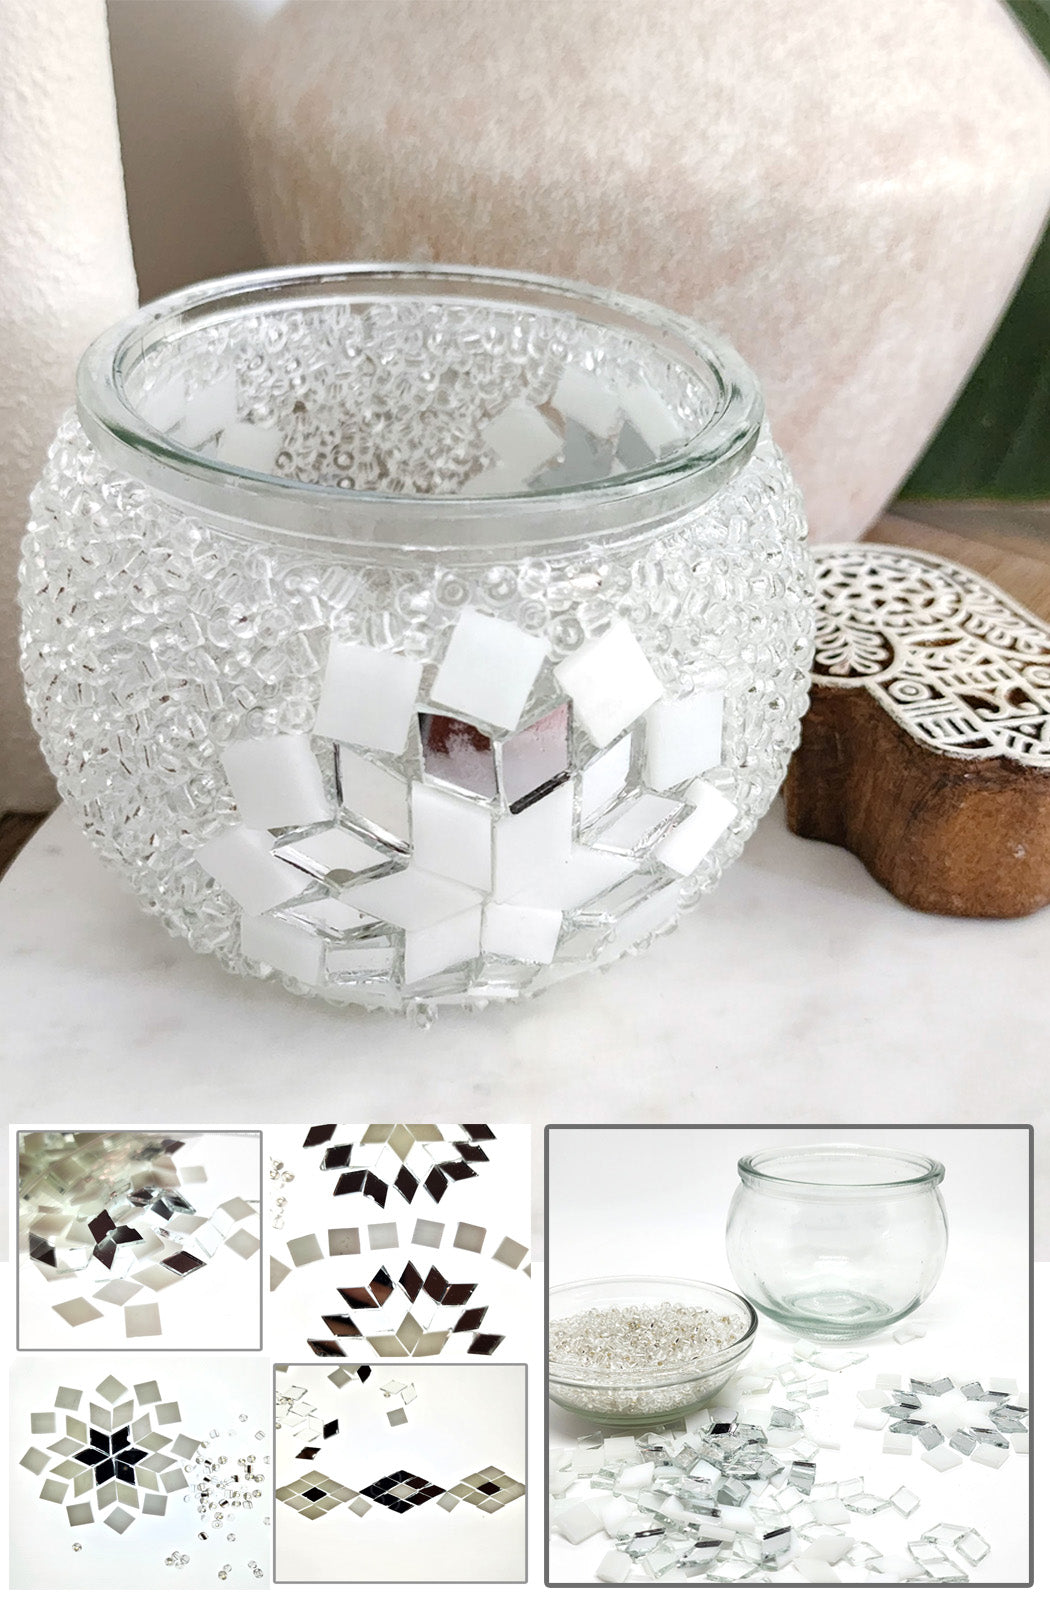 DIY Mosaic Tealight Craft Kit - Crystal (White & Mirror)